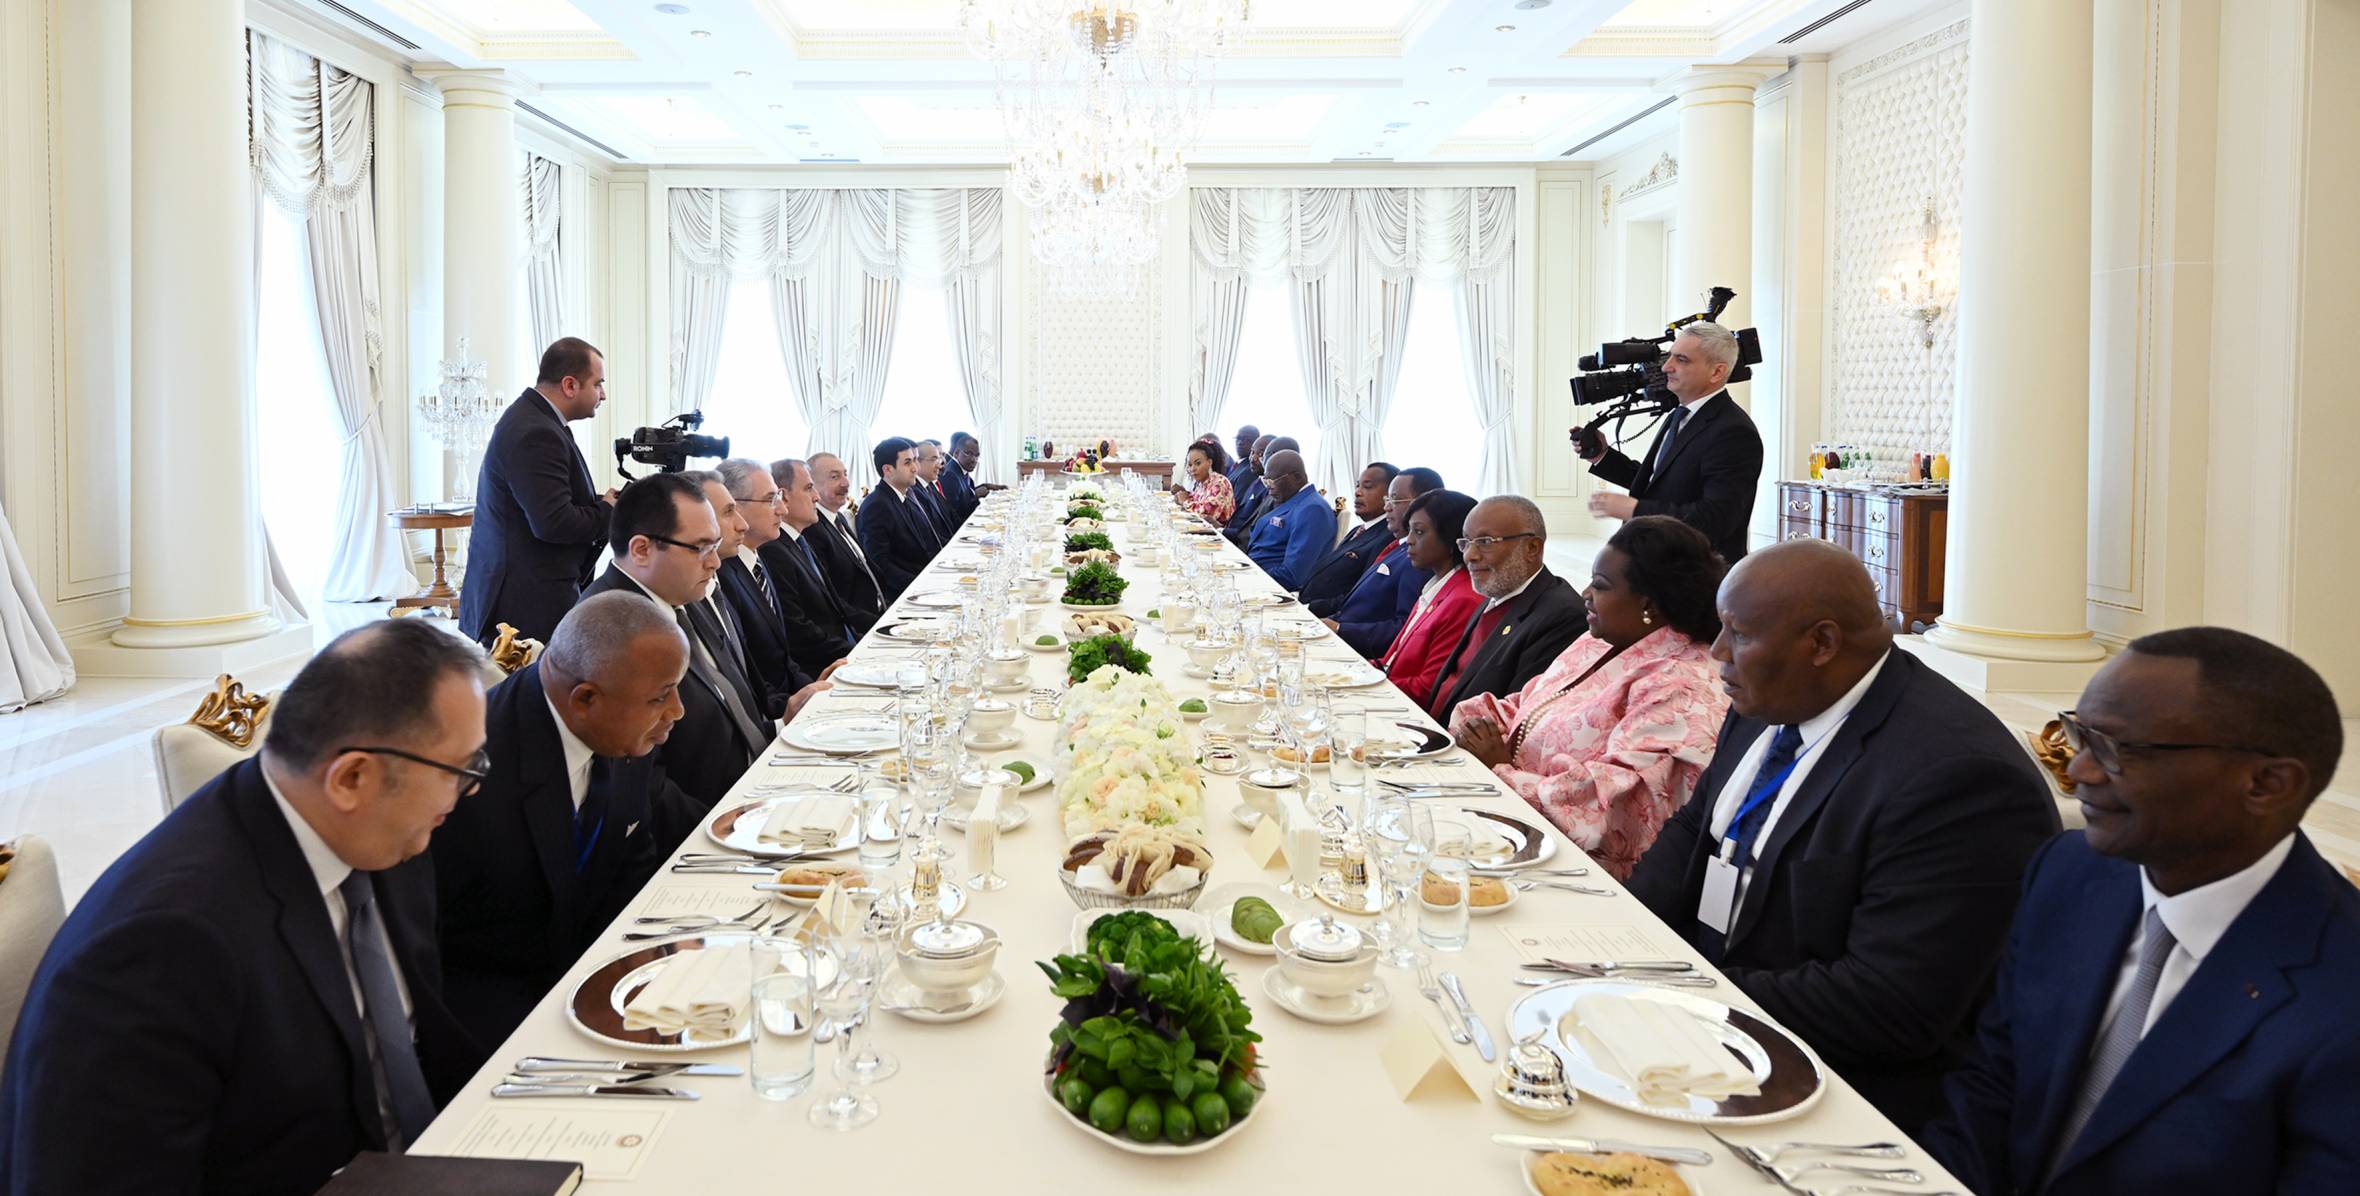 От имени Президента Азербайджана дан официальный обед в честь Президента Конго